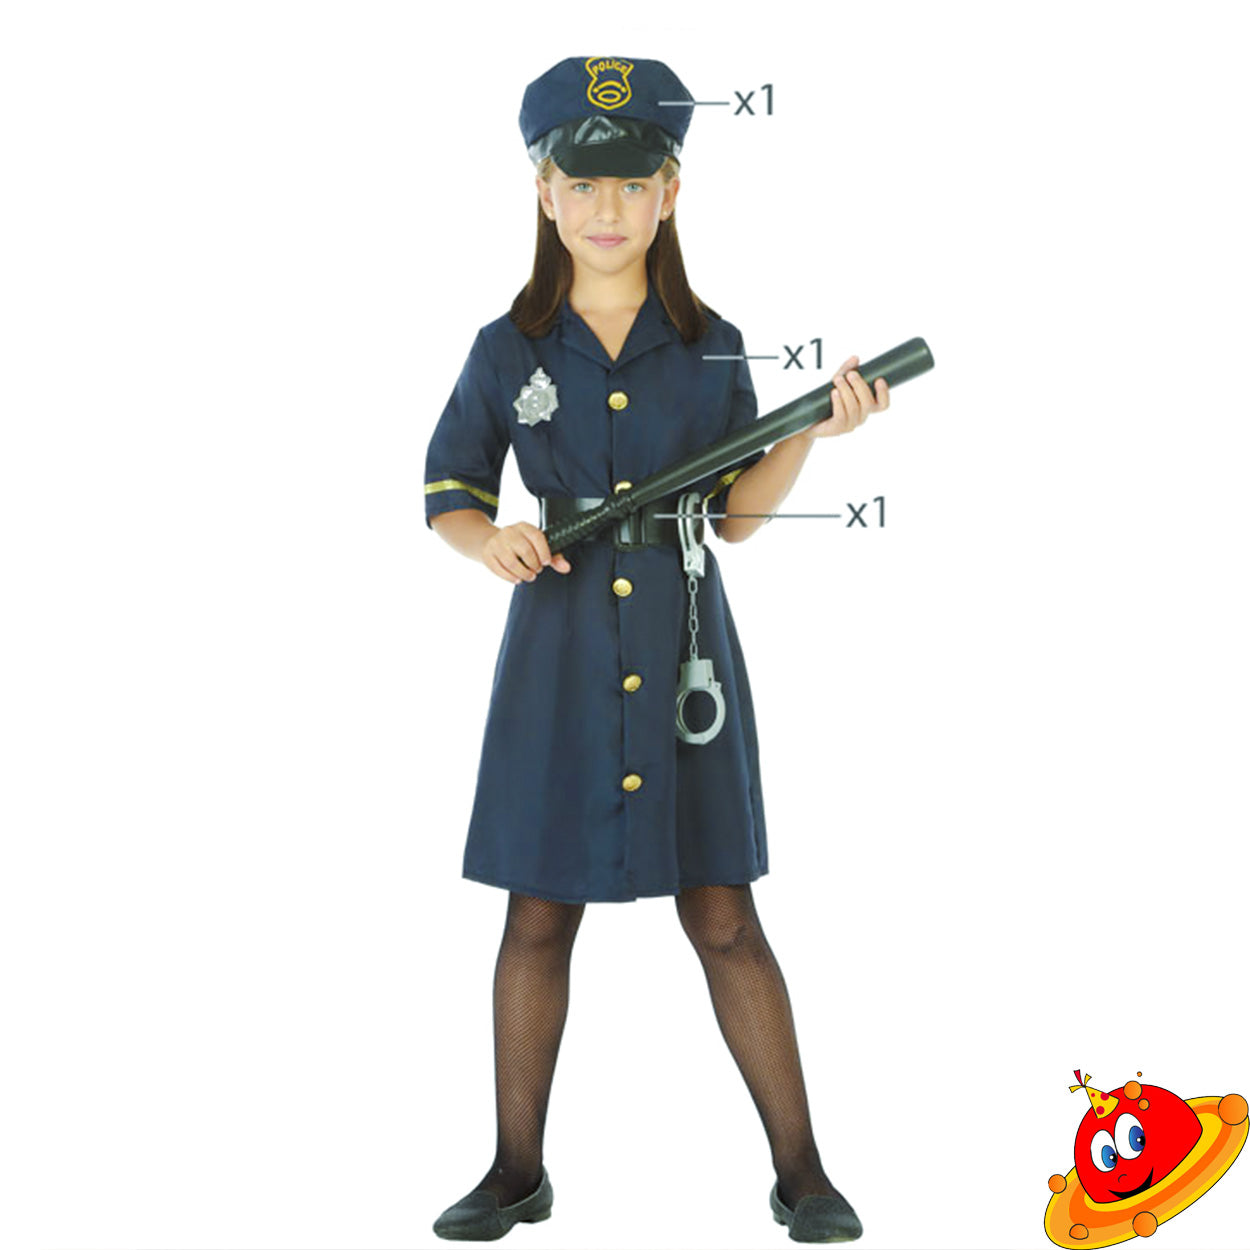 Costume Bambina Poliziotta Tg 5/9A – Universo In Festa